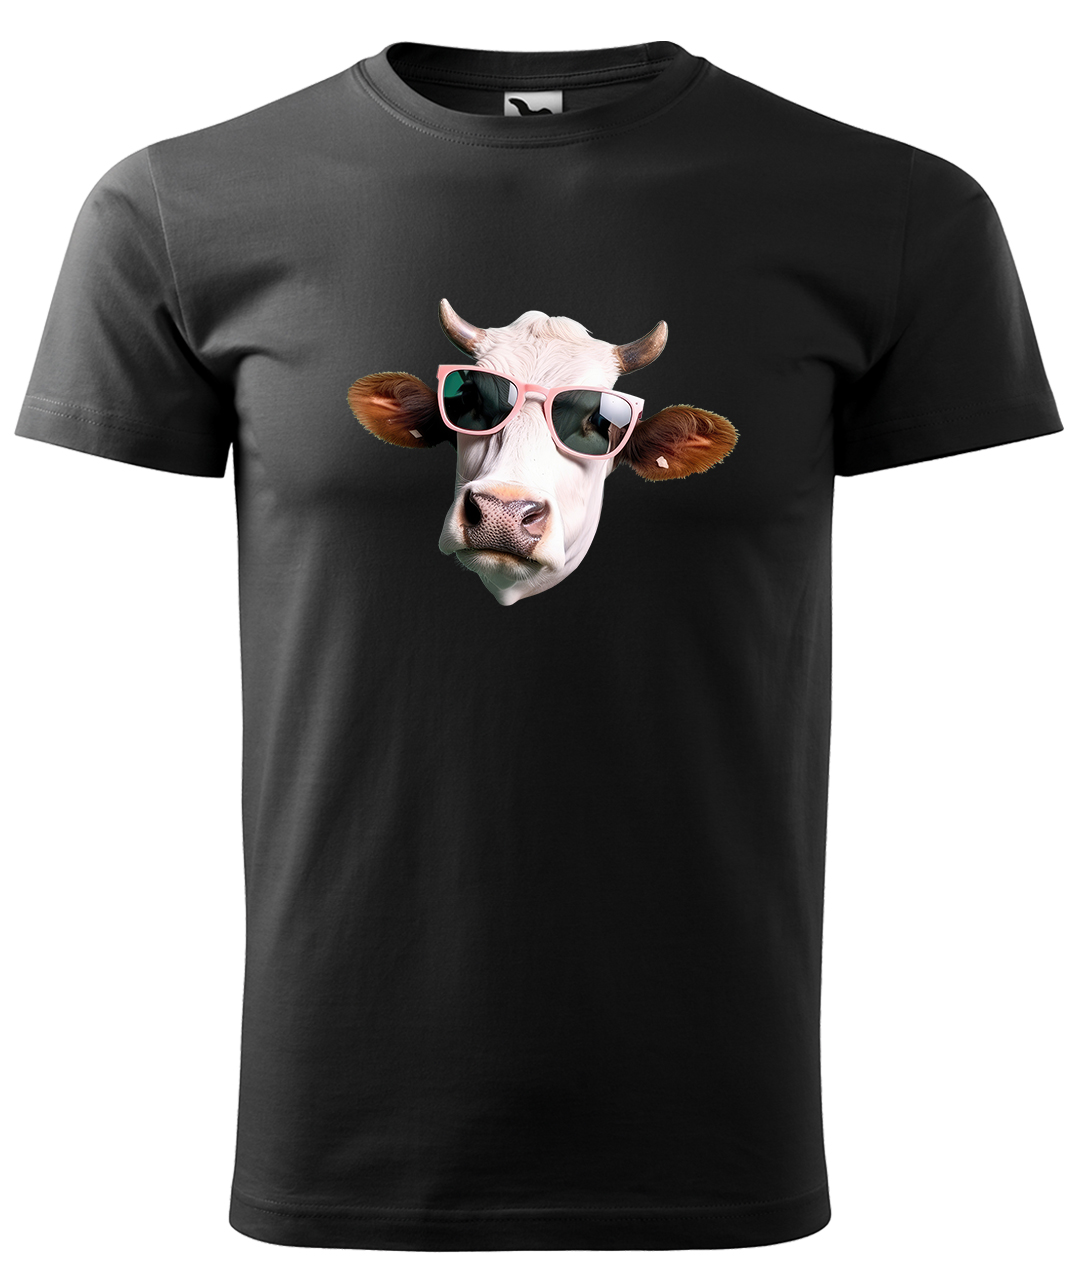 Dětské tričko s krávou - Kráva v brýlích Velikost: 4 roky / 110 cm, Barva: Černá (01), Délka rukávu: Krátký rukáv